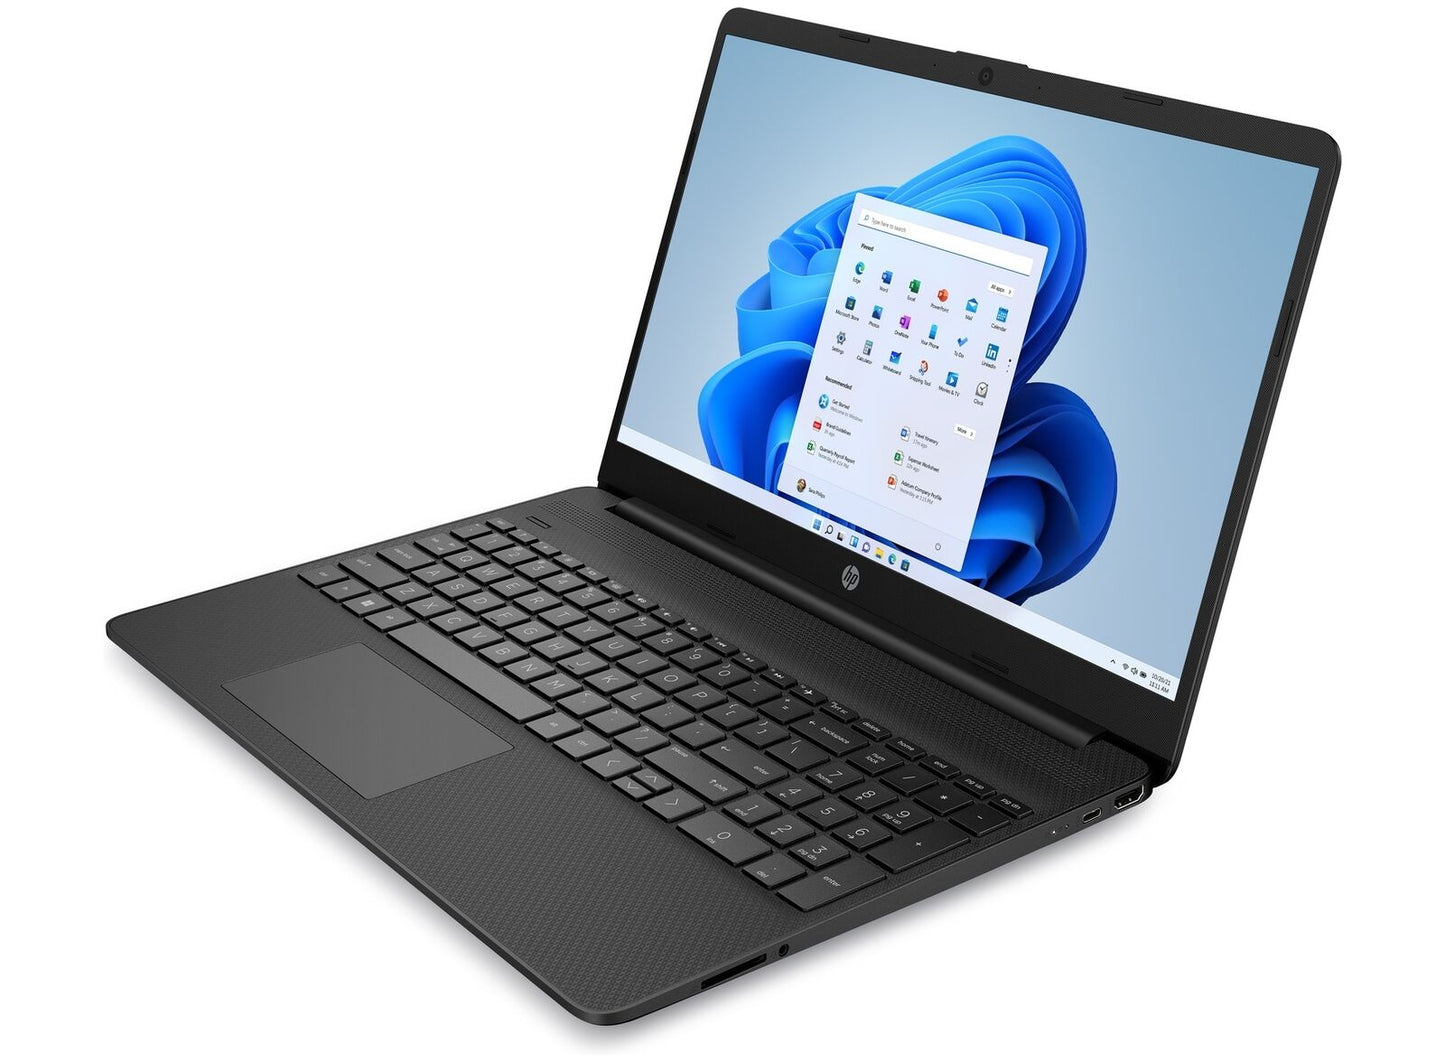 HP 15.6" Laptop- Intel Pentium Quad-Core CPU - 4GB RAM - 128GB SSD - BLACK FRIDAY SPECIAL